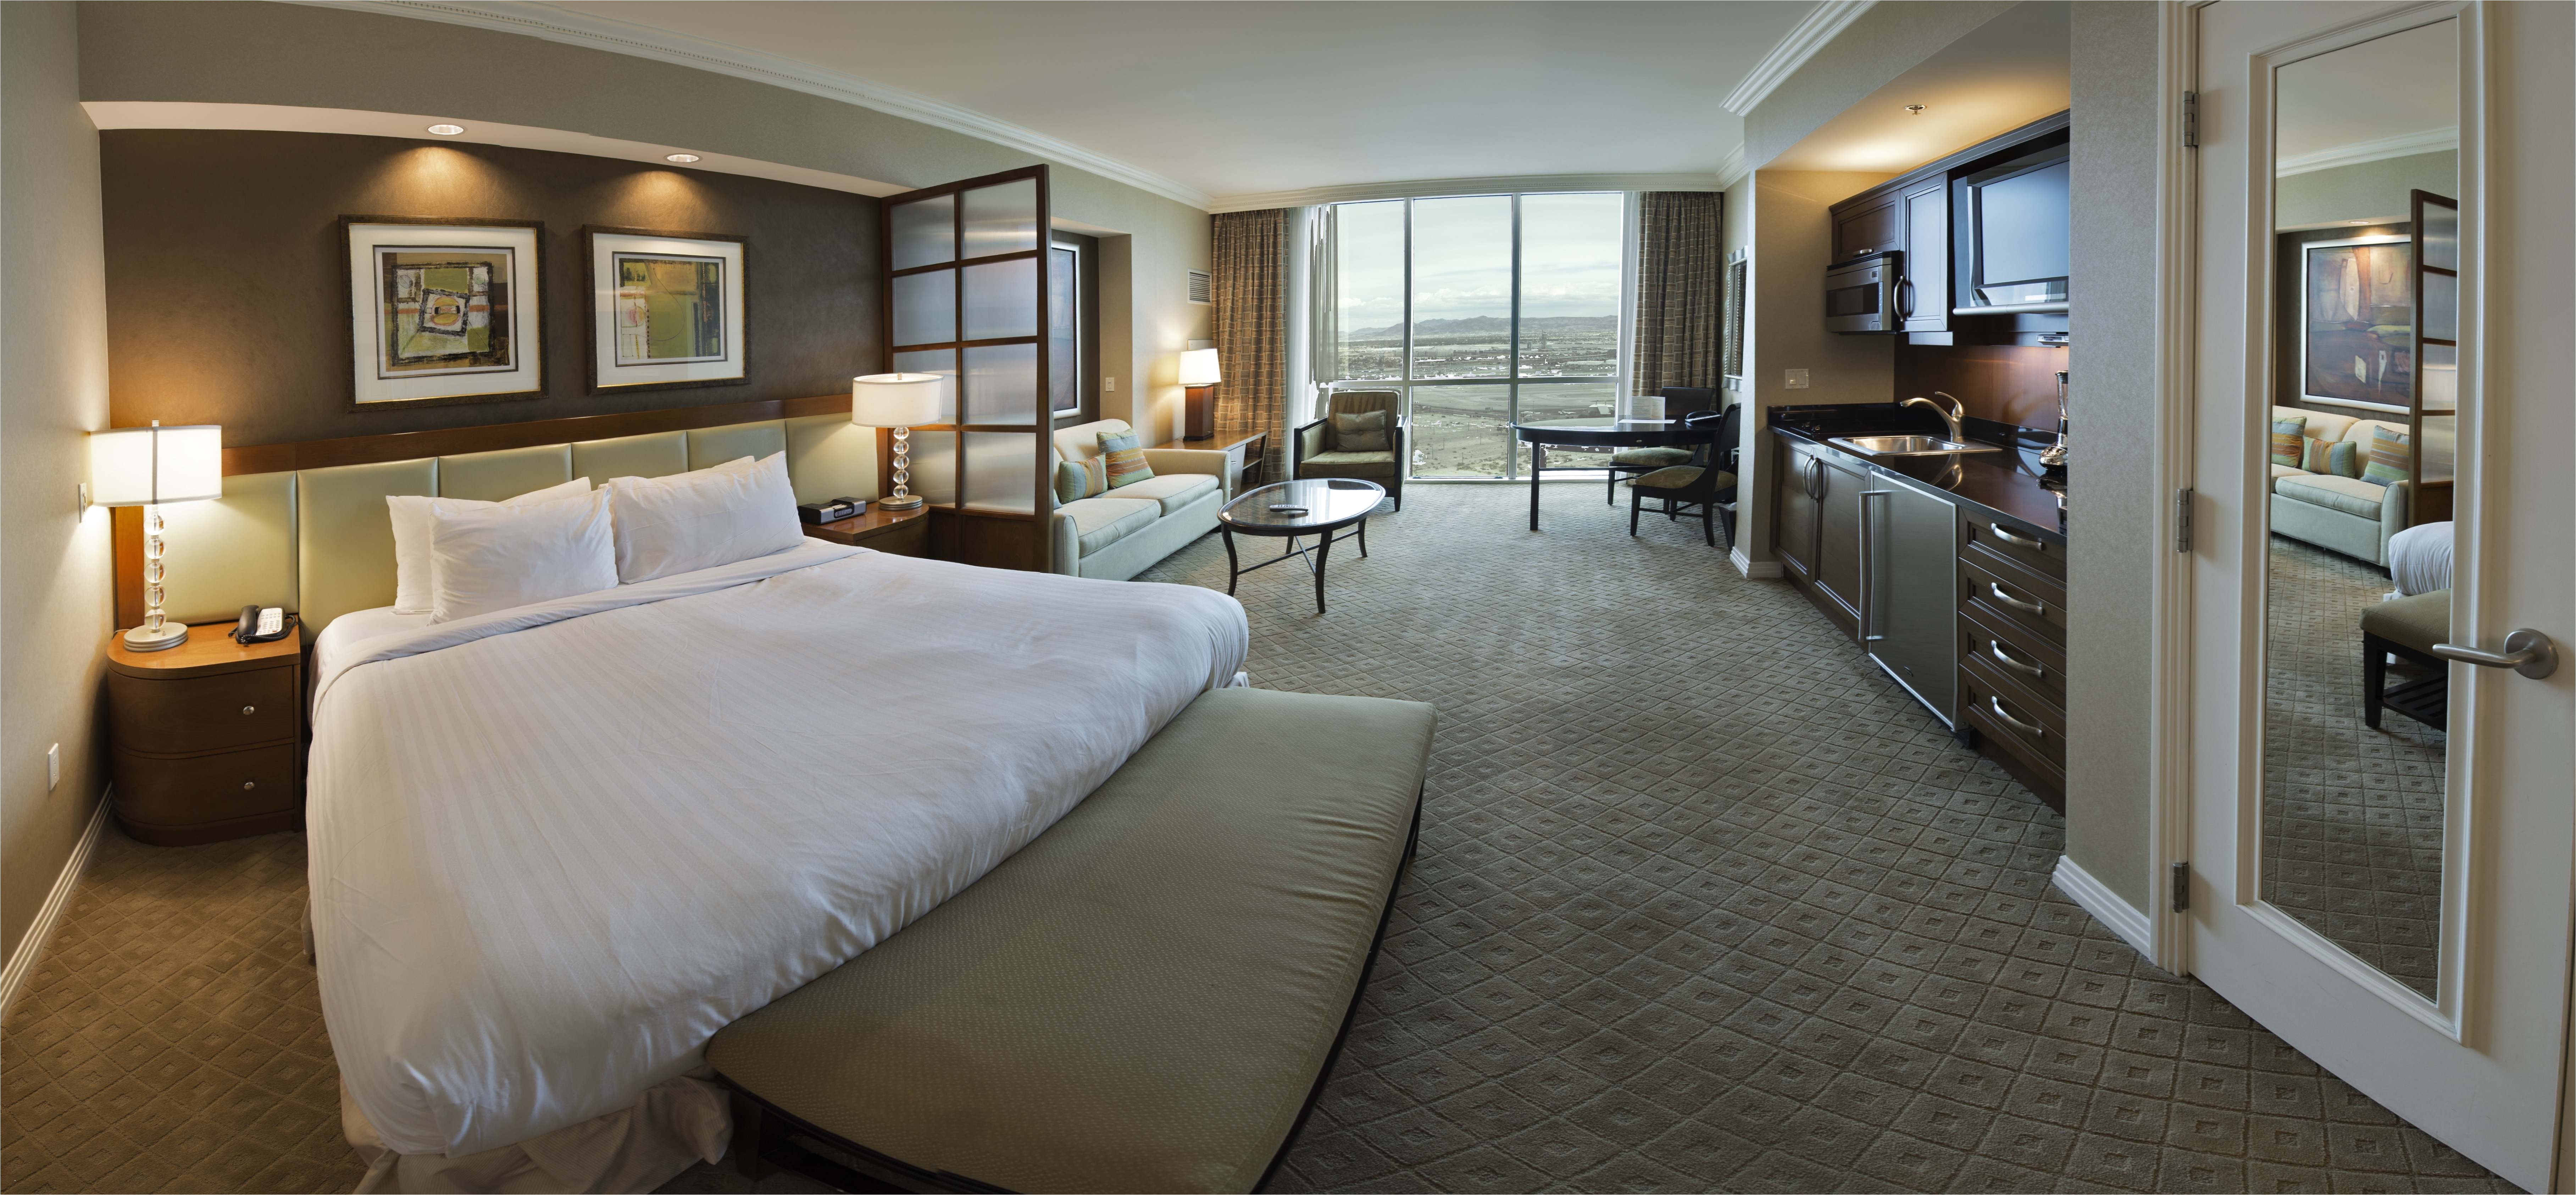 Connected rooms. MGM Grand номера. Комната в отеле. Гранд сигнатур отель. Connected Room номер отеля.